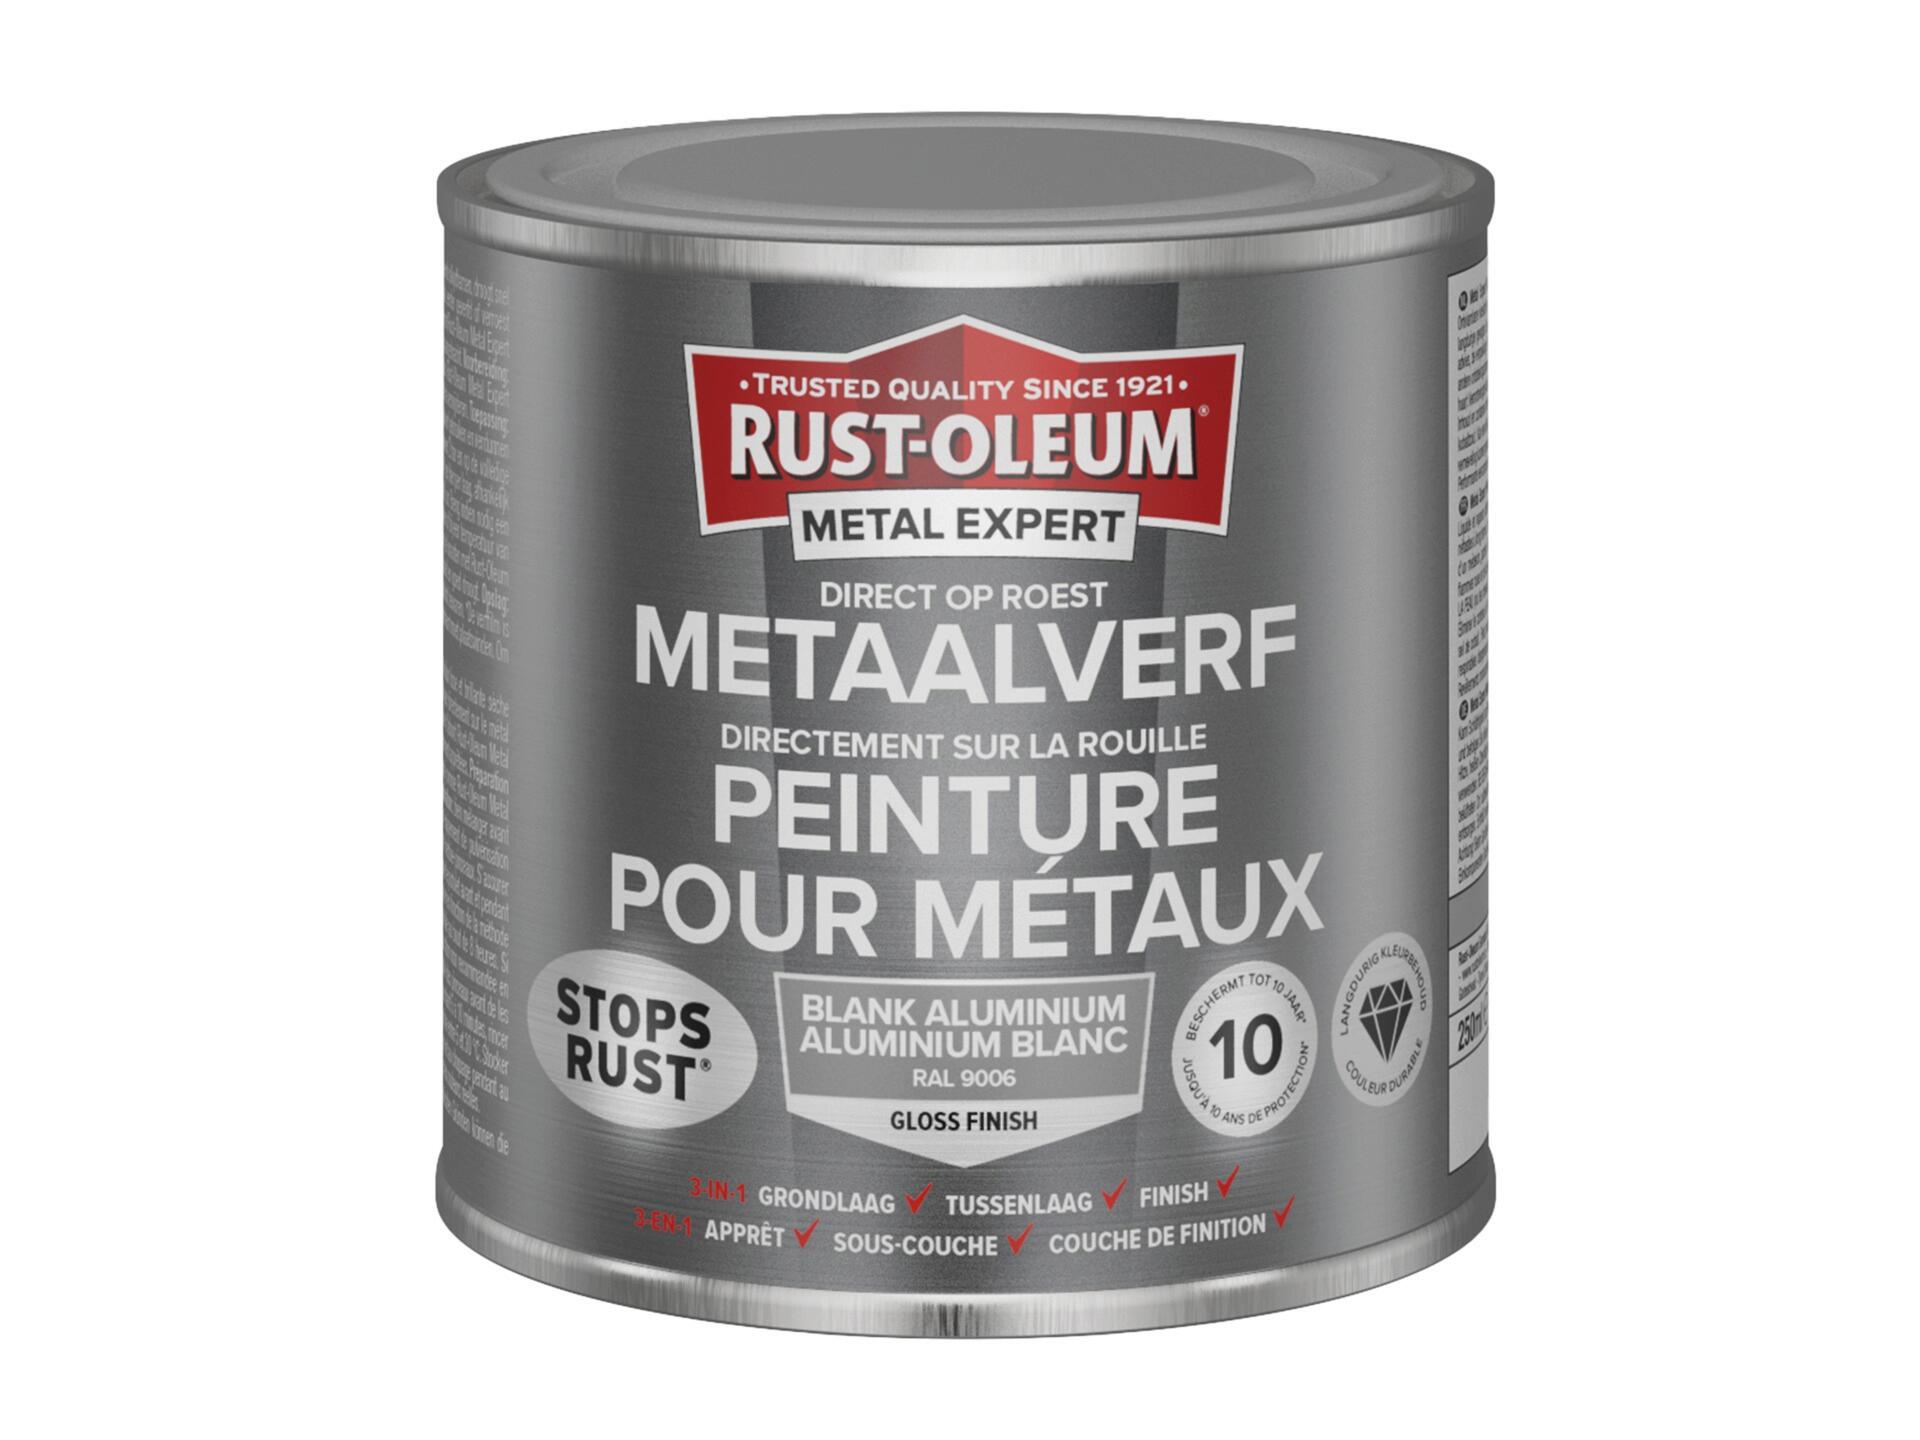 Rust-oleum Metal Expert peinture pour métaux brillant 250ml aluminium blanc